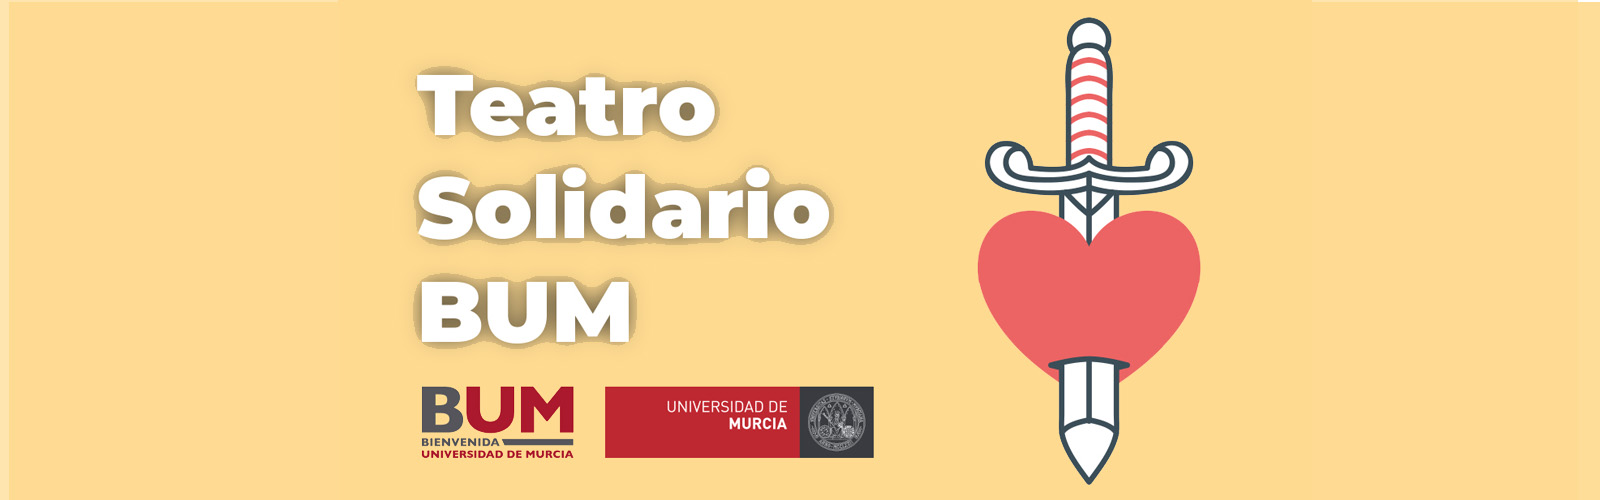 Teatro solidario en la Universidad de Murcia para ayudar a los afectados por la DANA